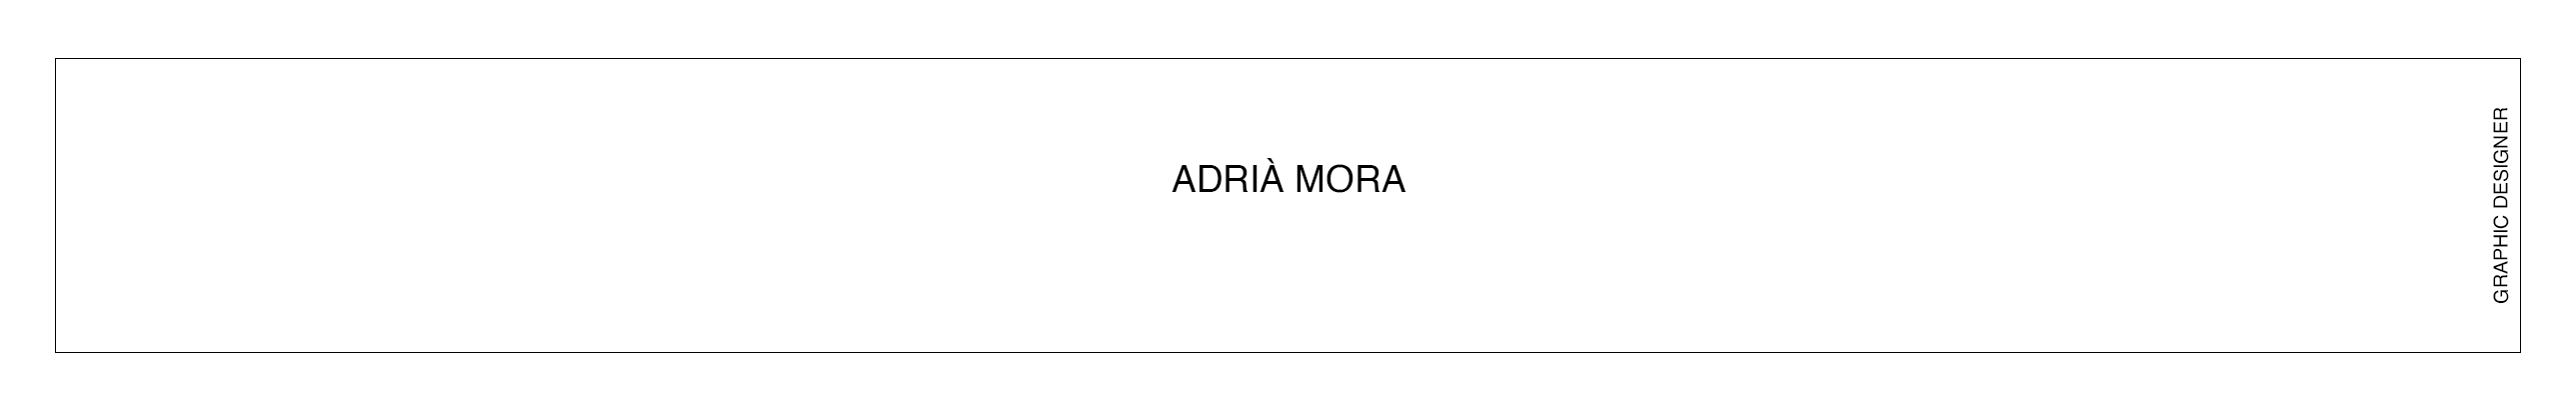 Adrià Mora's profile banner